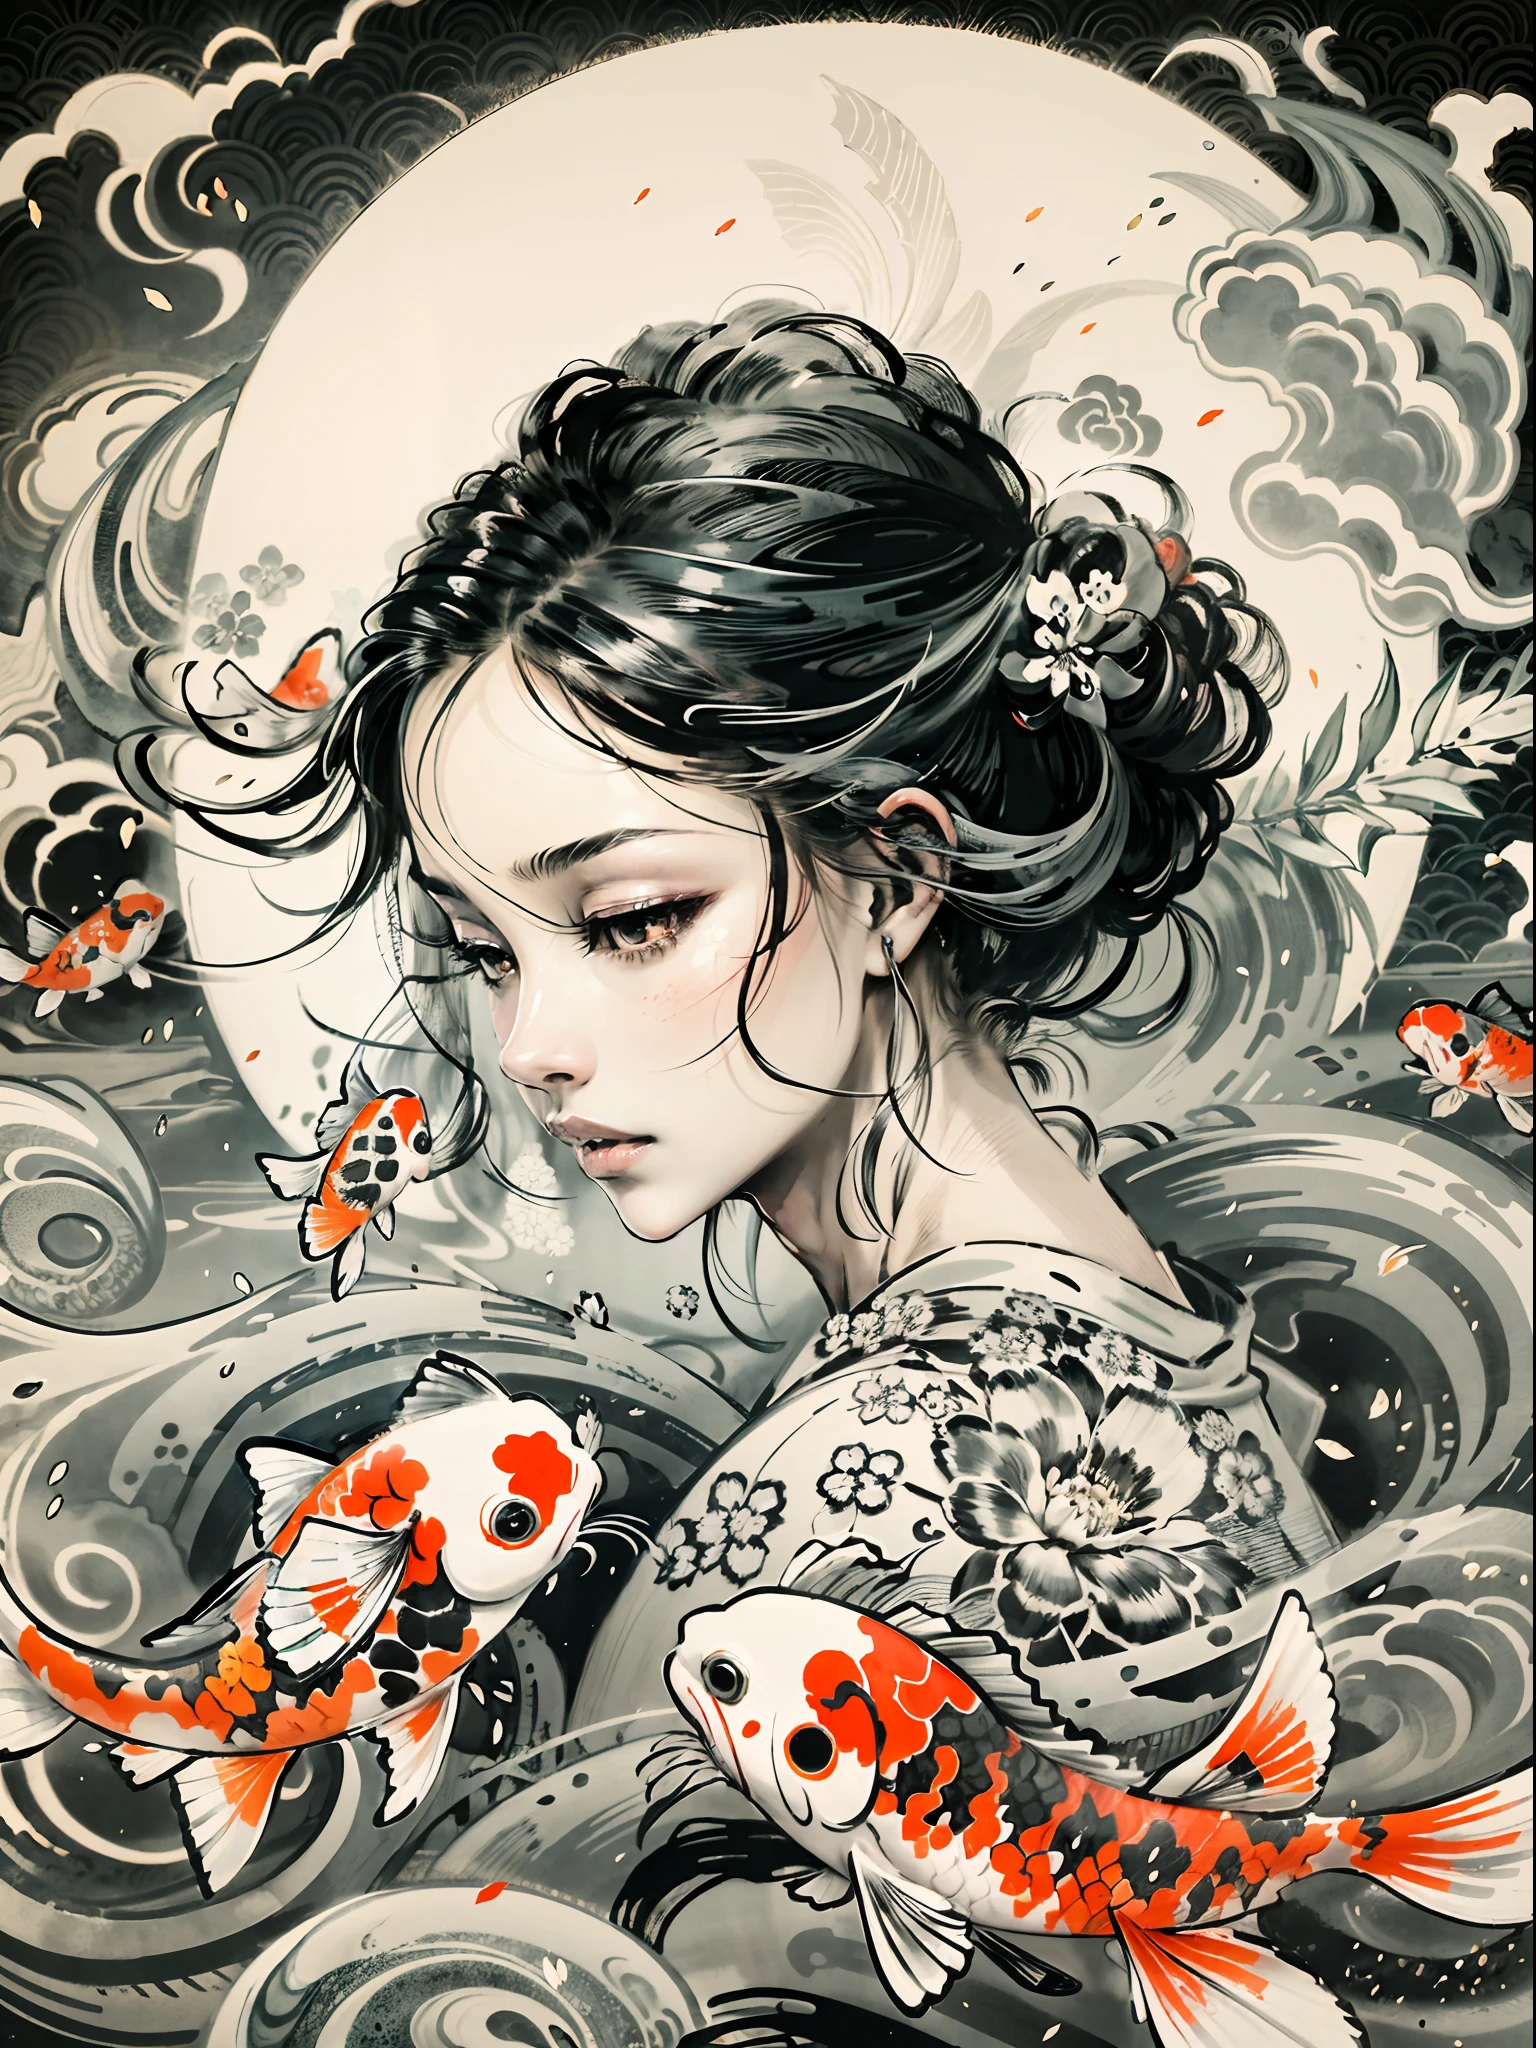 "迷人的描繪了優雅的錦鯉在年輕女孩周圍優雅地旋轉, 讓人想起令人驚嘆的日本黑白墨水畫, 在背景中形成迷人的陰陽符號."